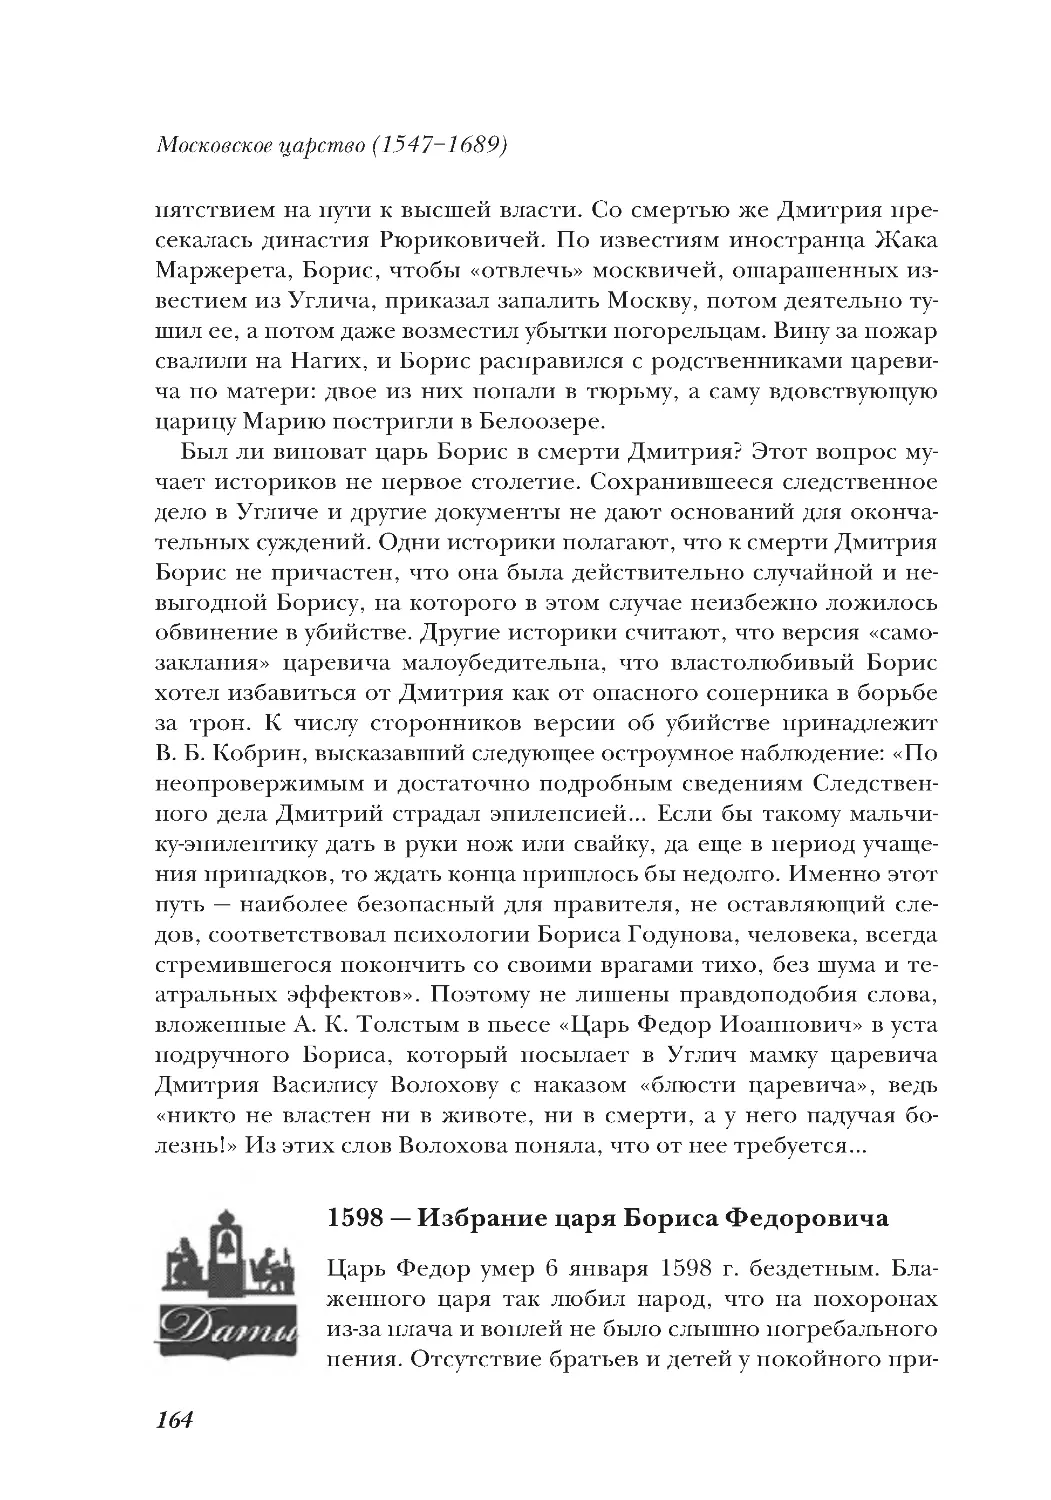 1598 — Избрание царя Бориса Федоровича